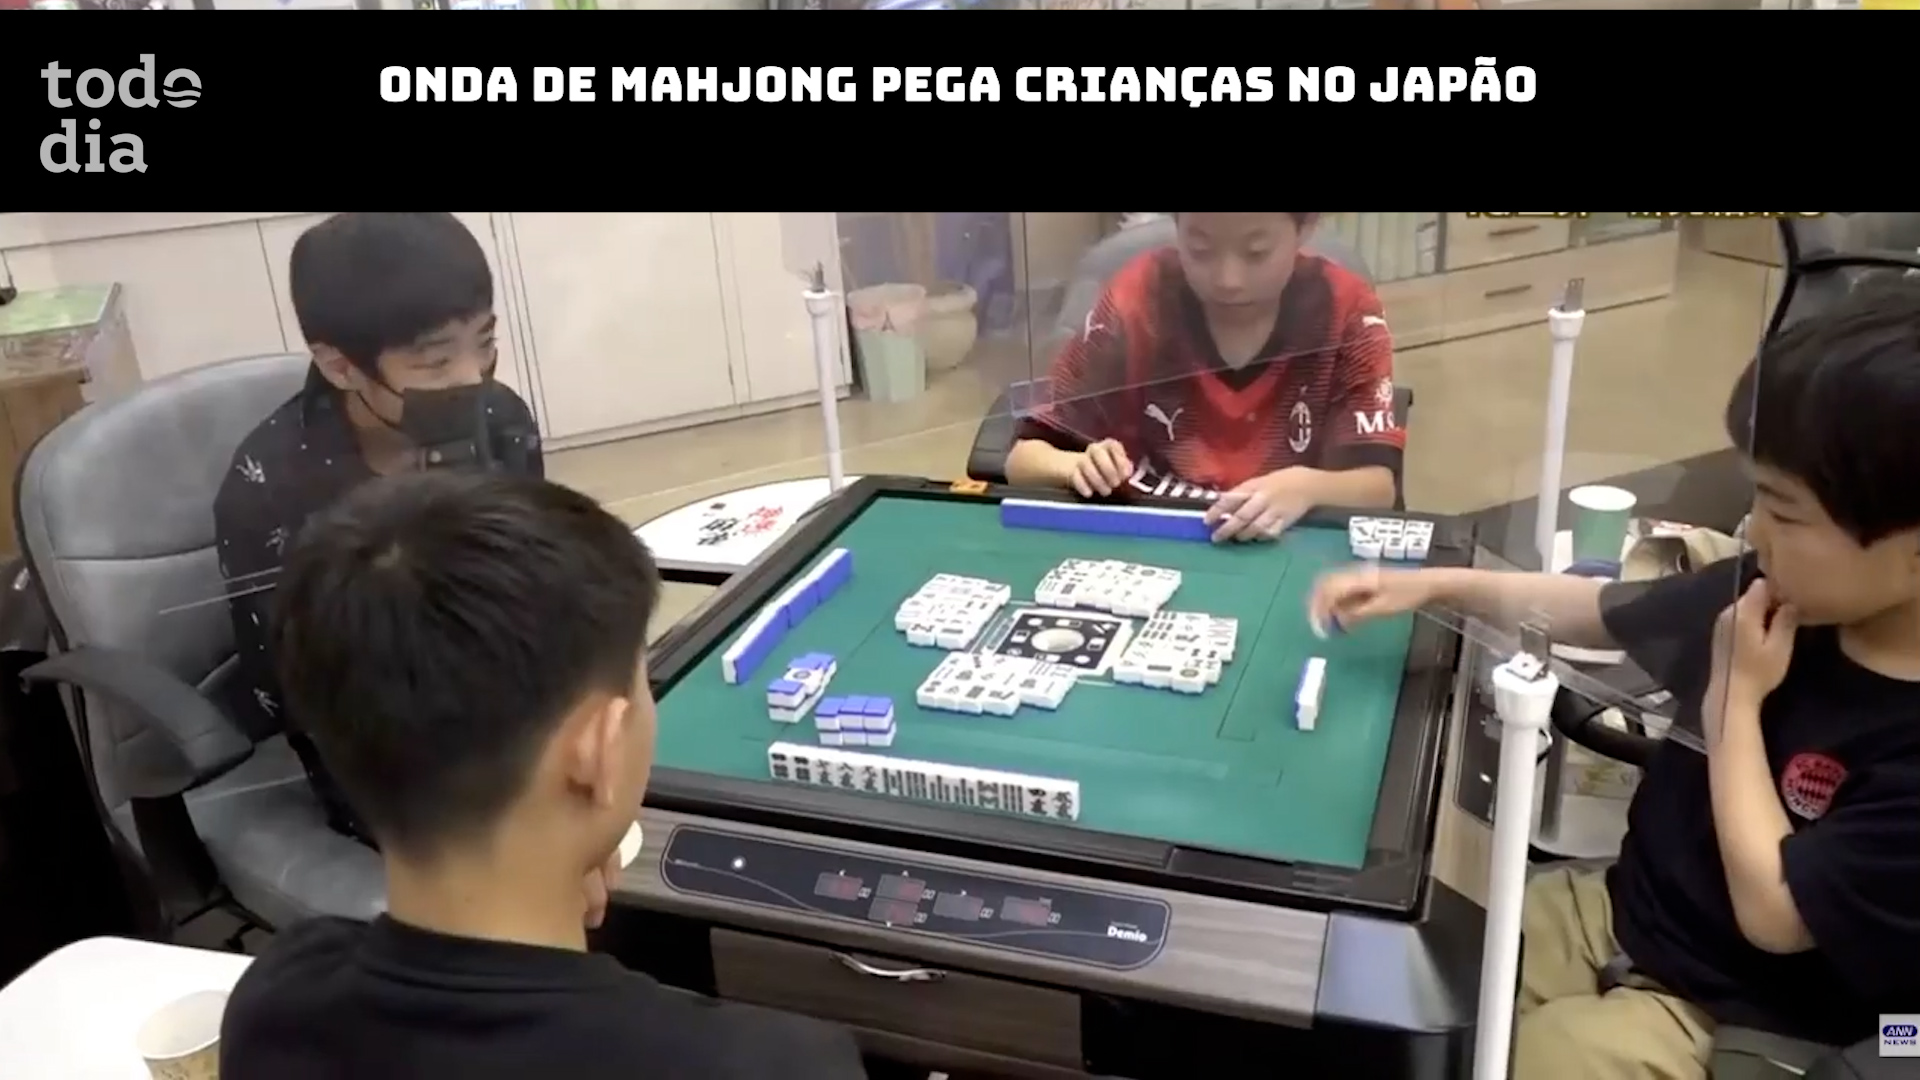 Onda de Mahjong pega crianças no Japão 